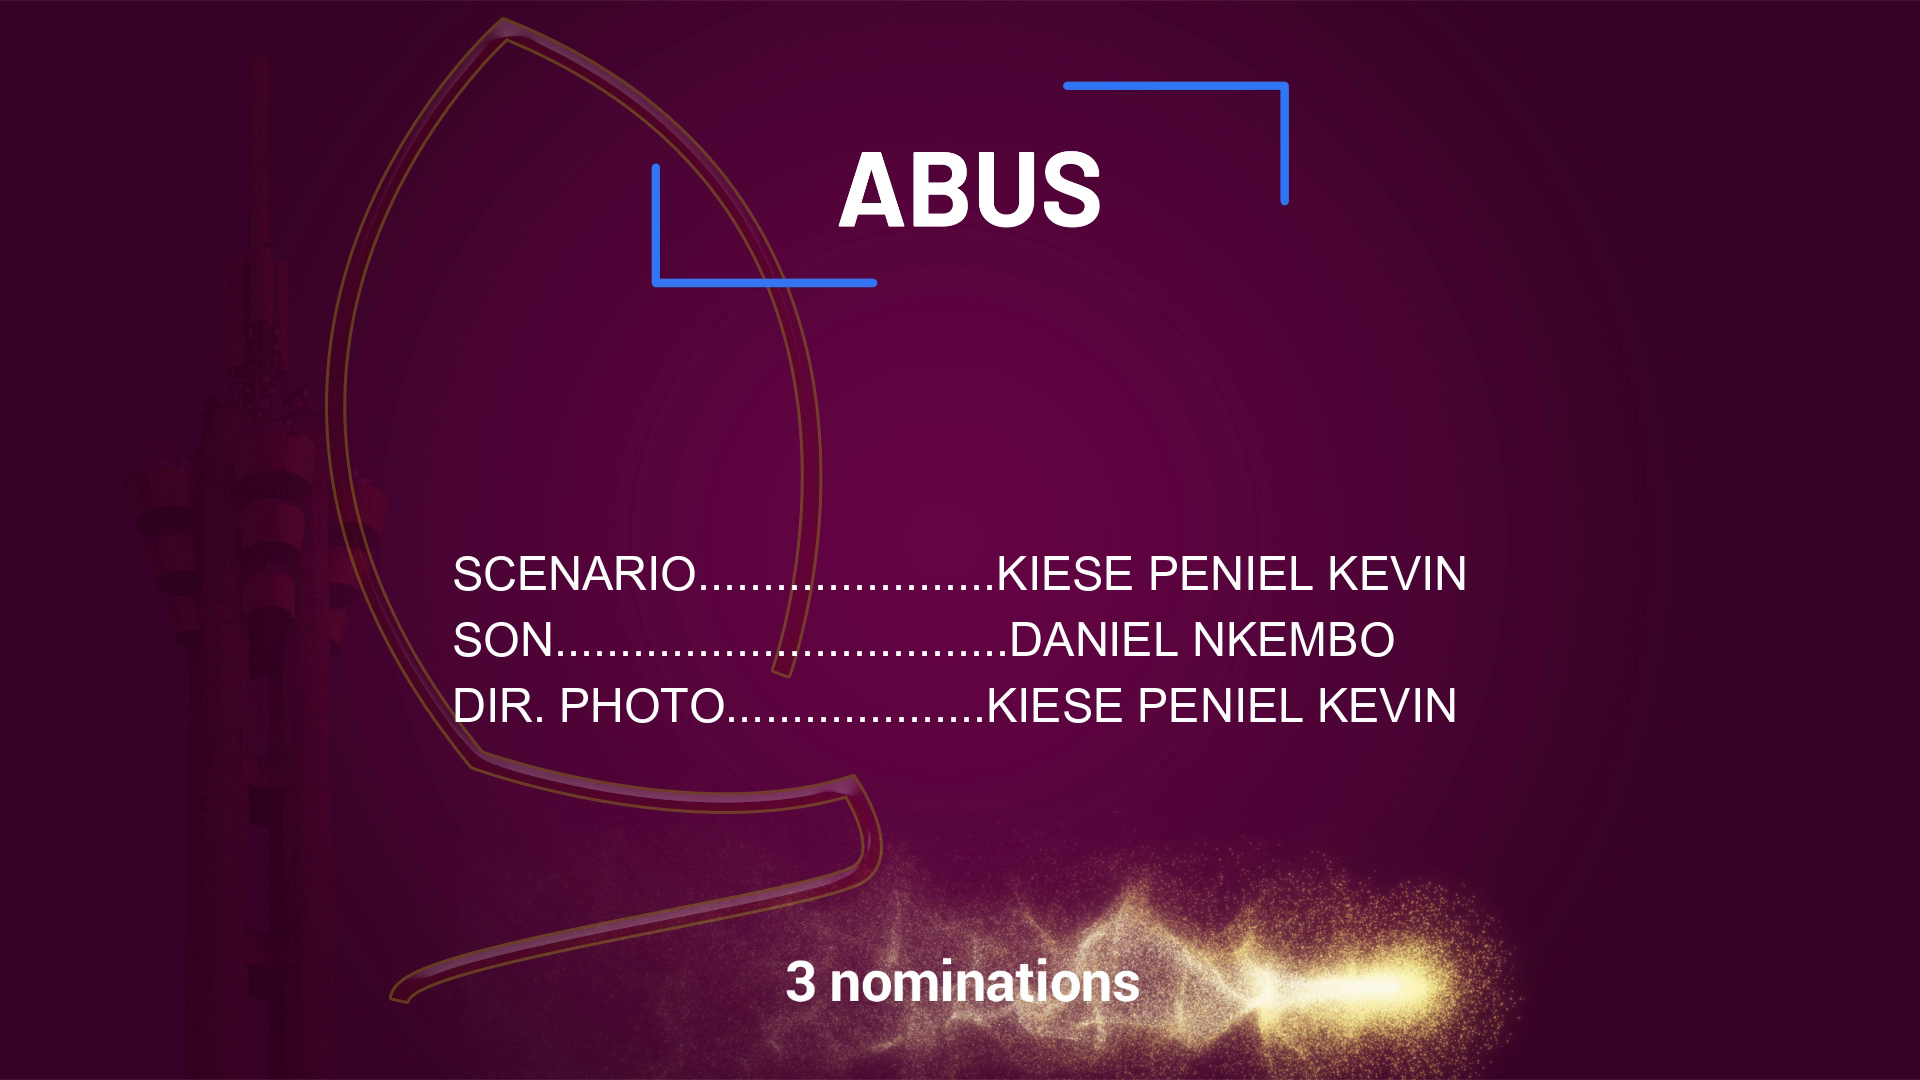 Nomination Abus de Joyce Kevin Peniel